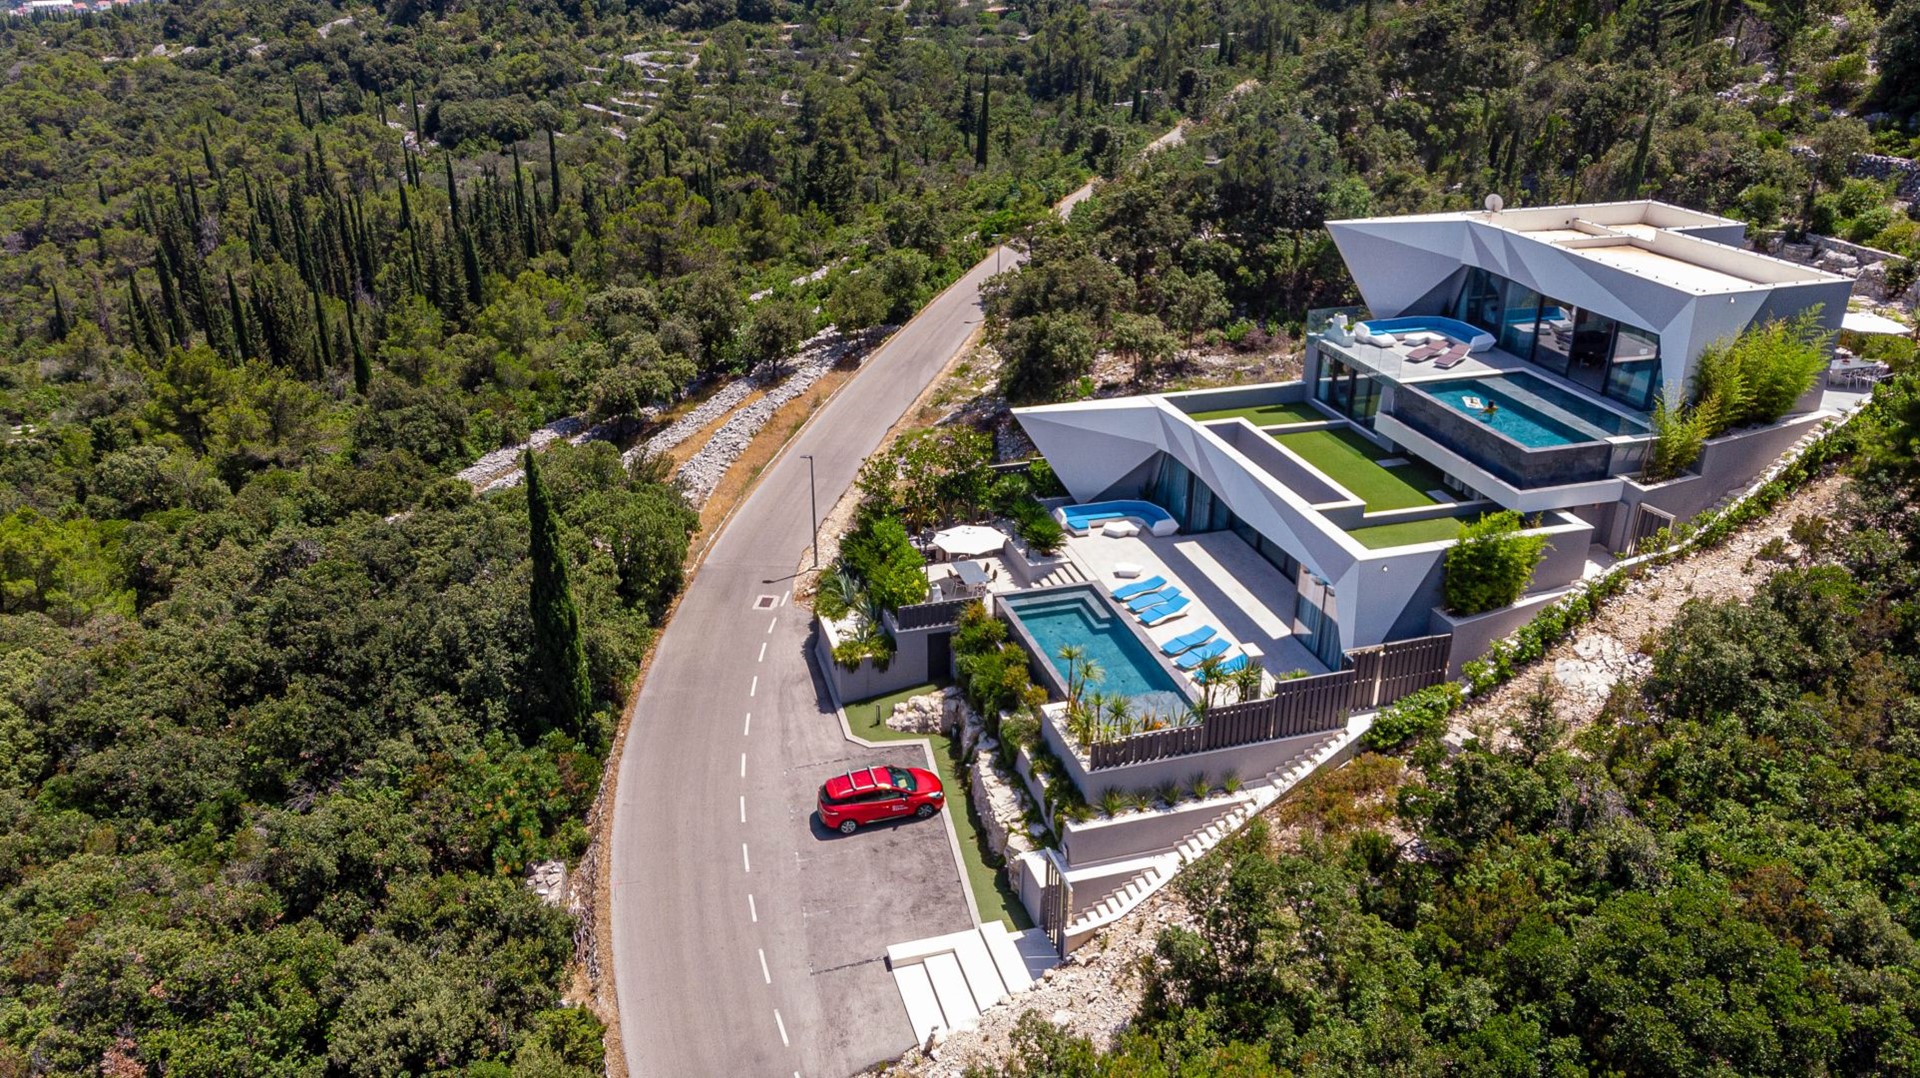 Himmelsblick auf eine kroatische Luxusvilla Korcula Diamond mit privaten Pools und Meerblick auf die Insel Korcula